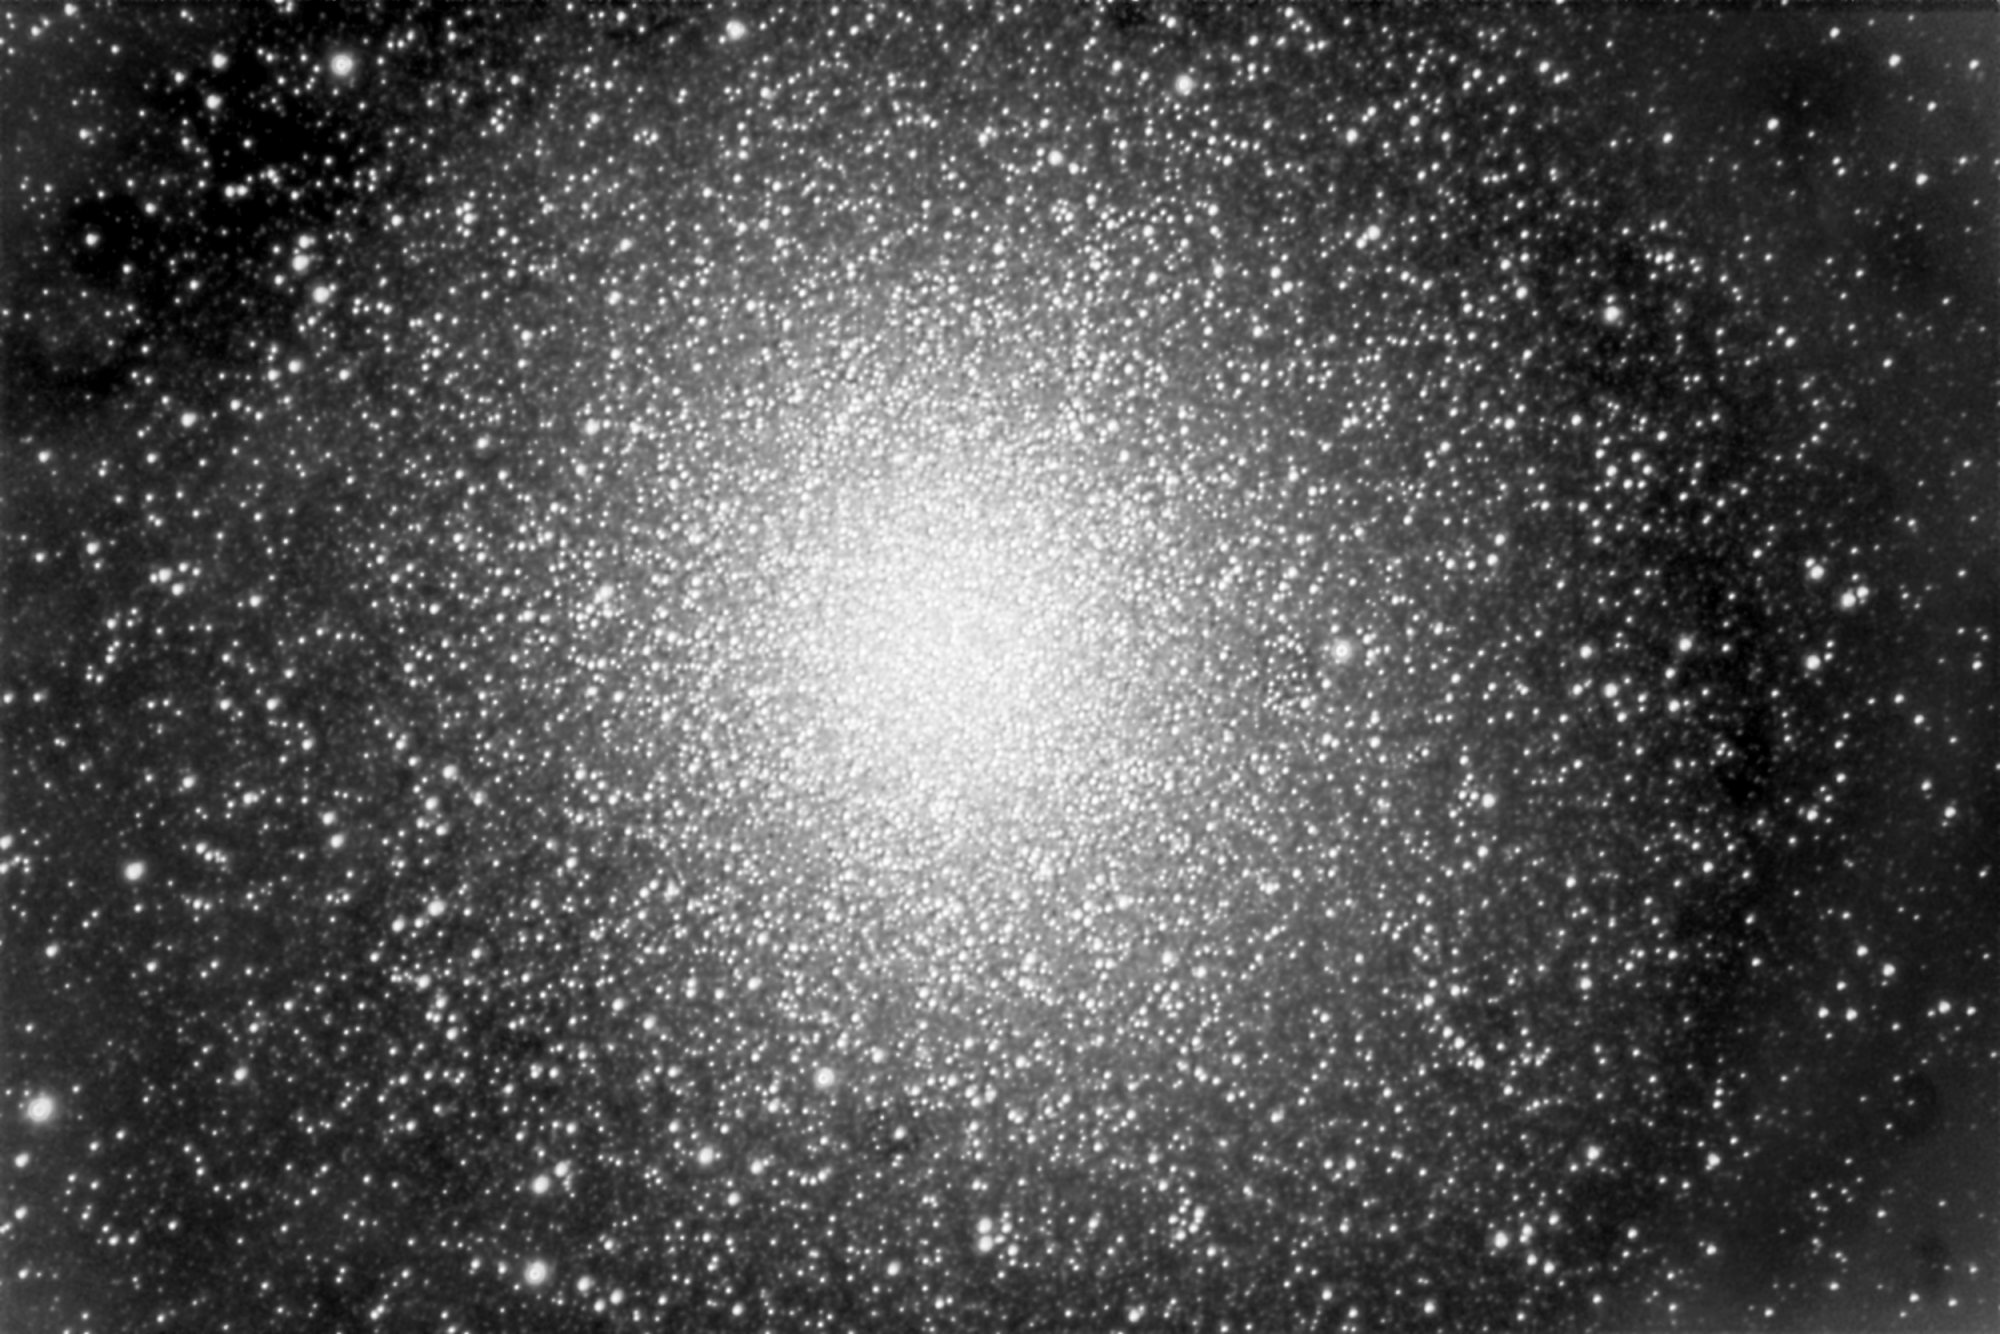 Omega Centauri, NGC5139